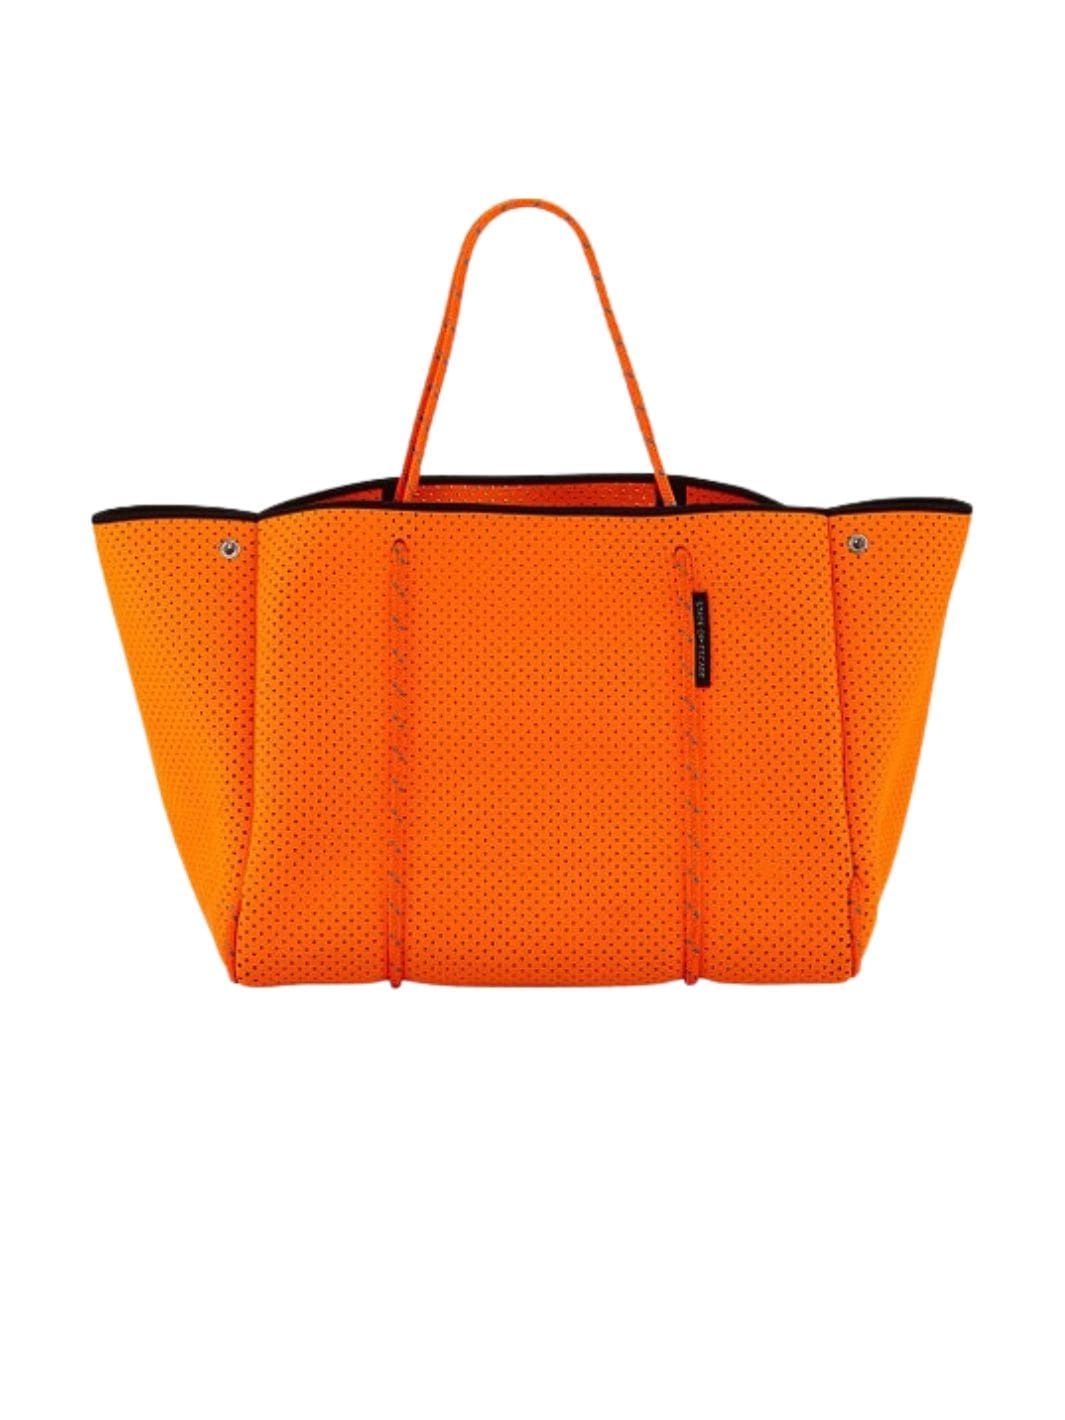 State of Escape Bags Tote Bag | Escape Tote Orange Soda